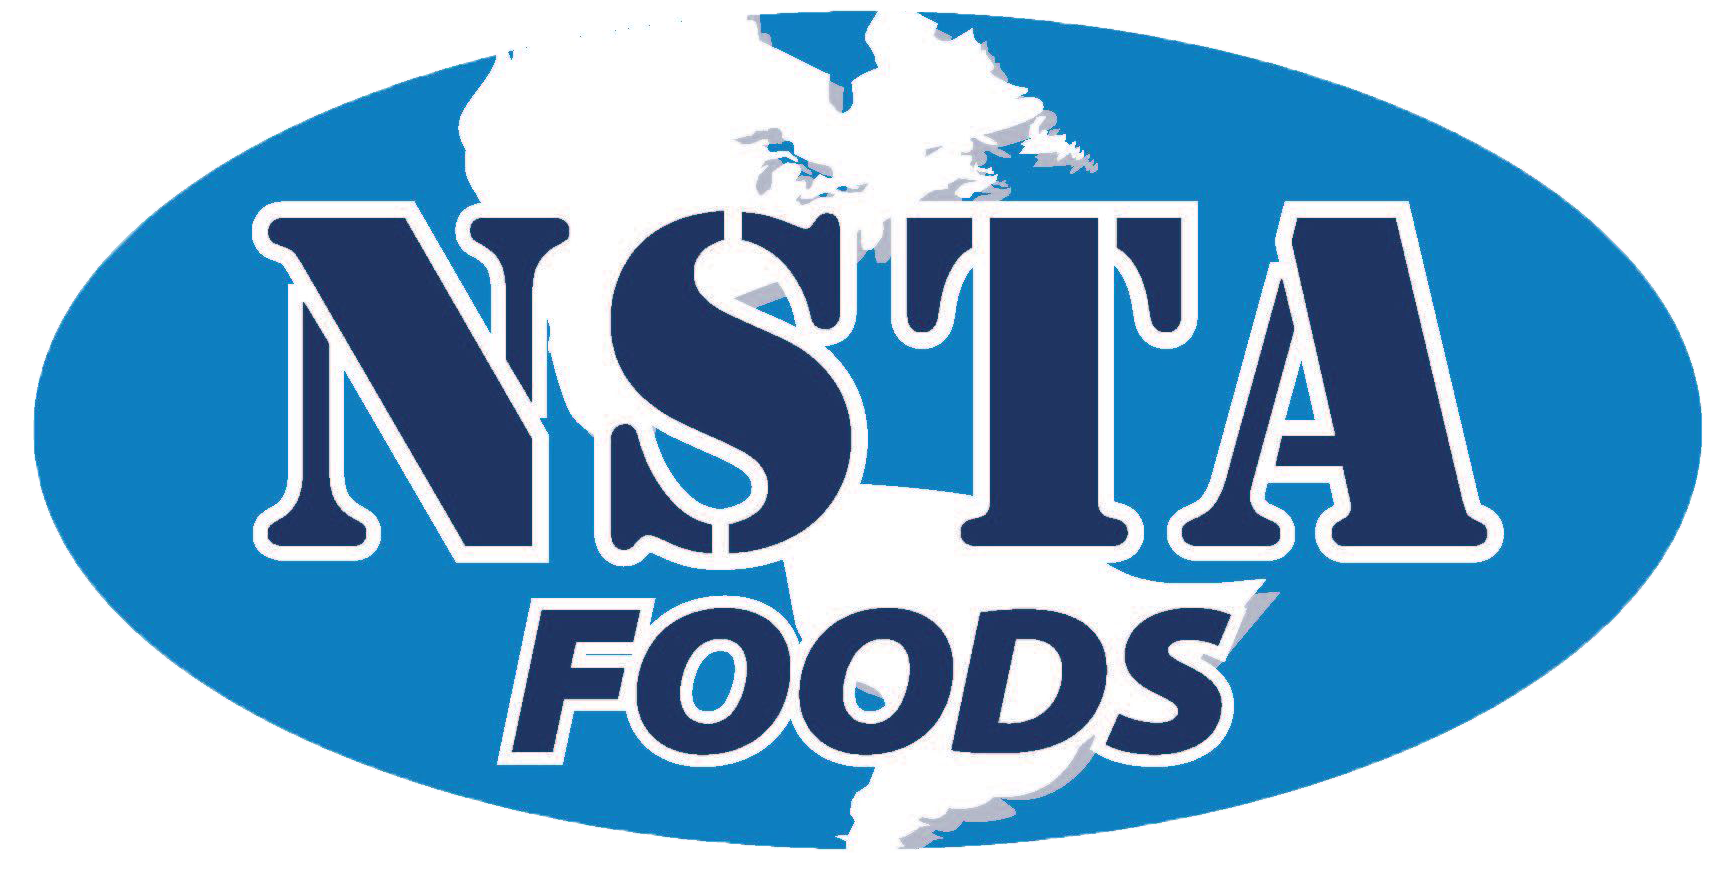 NSTA Foods